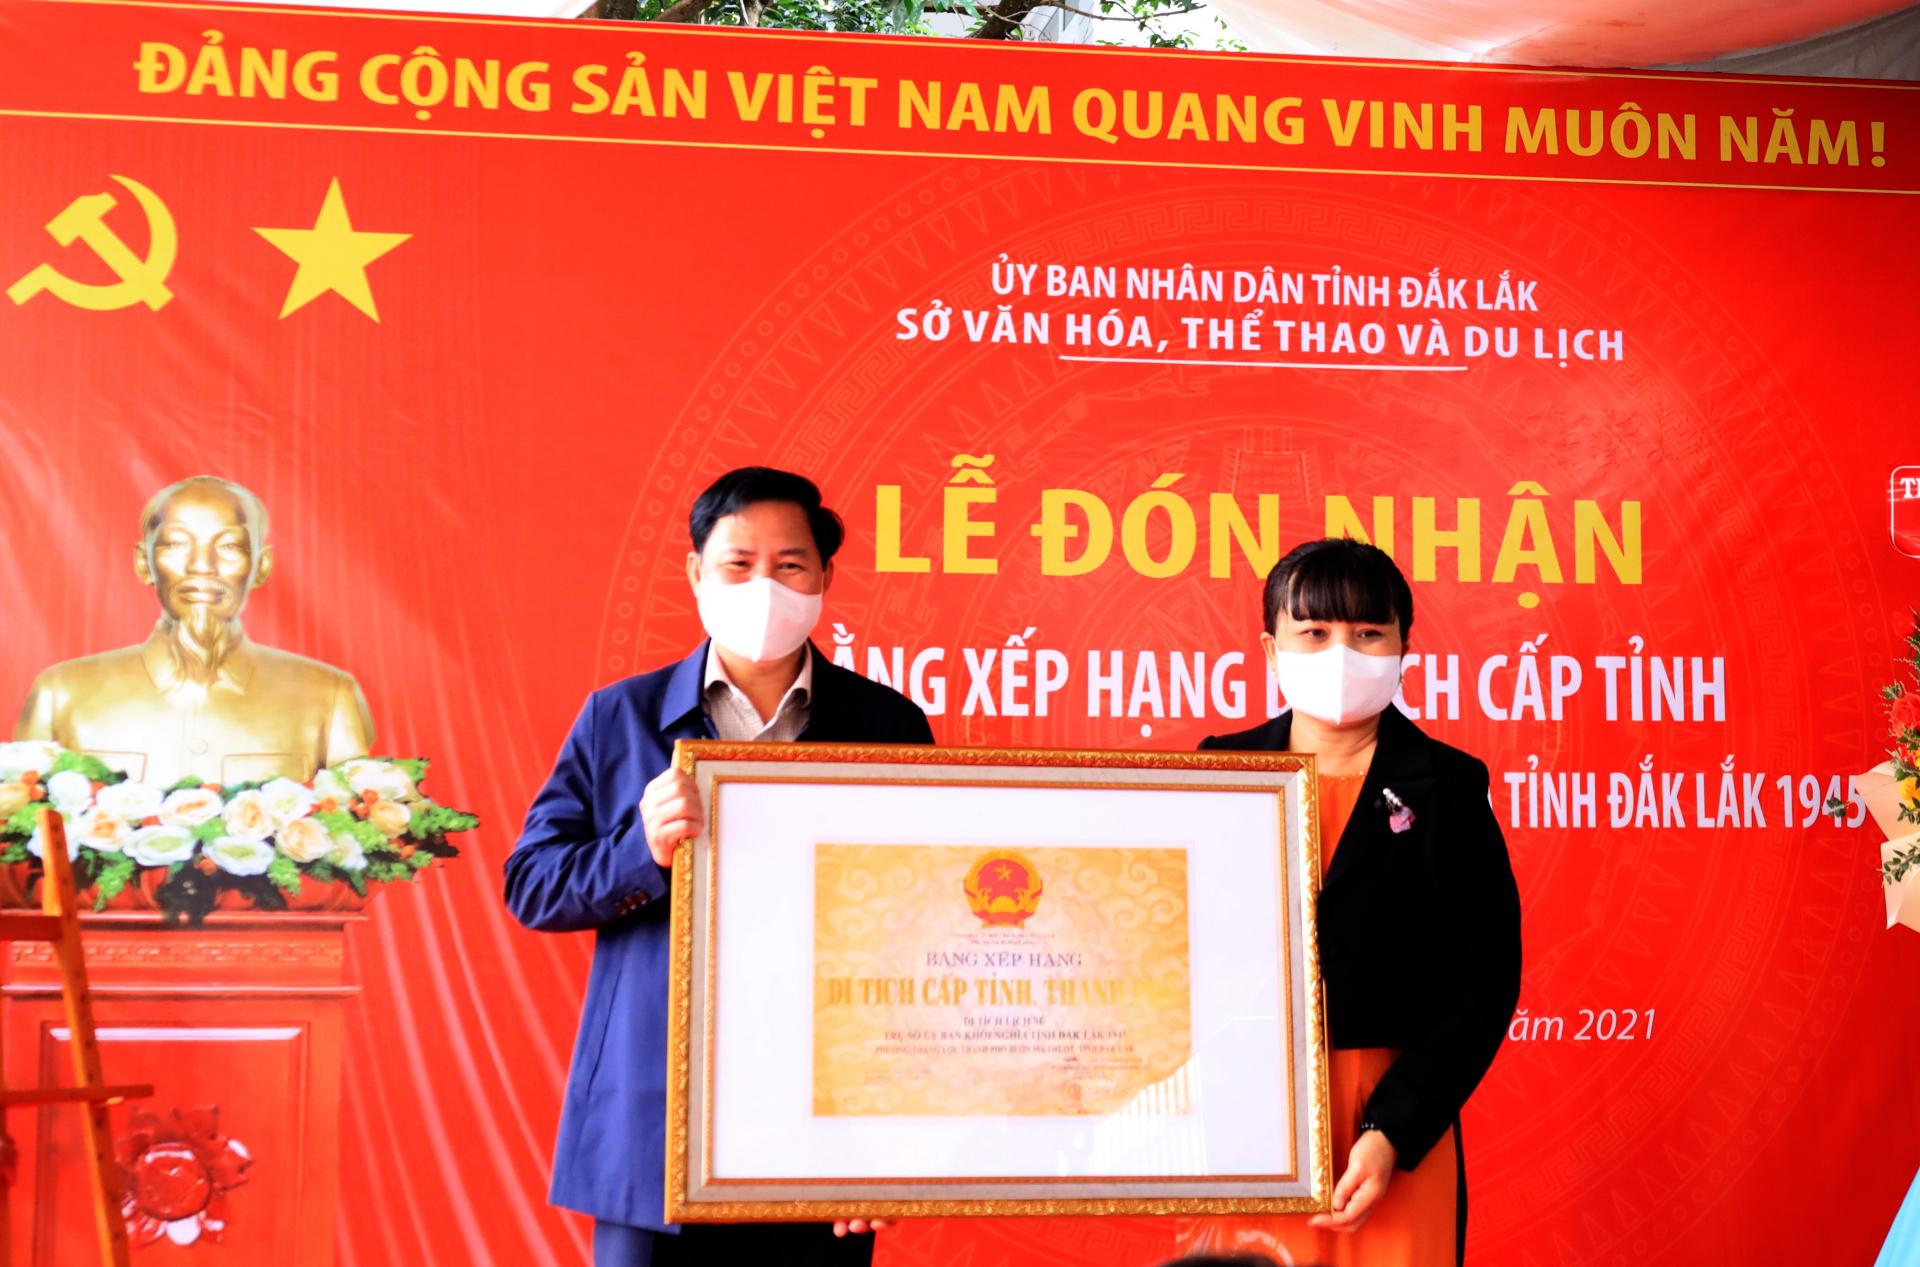 Đón nhận Bằng xếp hạng Di tích cấp tỉnh đối với Di tích lịch sử “Trụ sở Ủy ban khởi nghĩa tỉnh Đắk Lắk 1945”